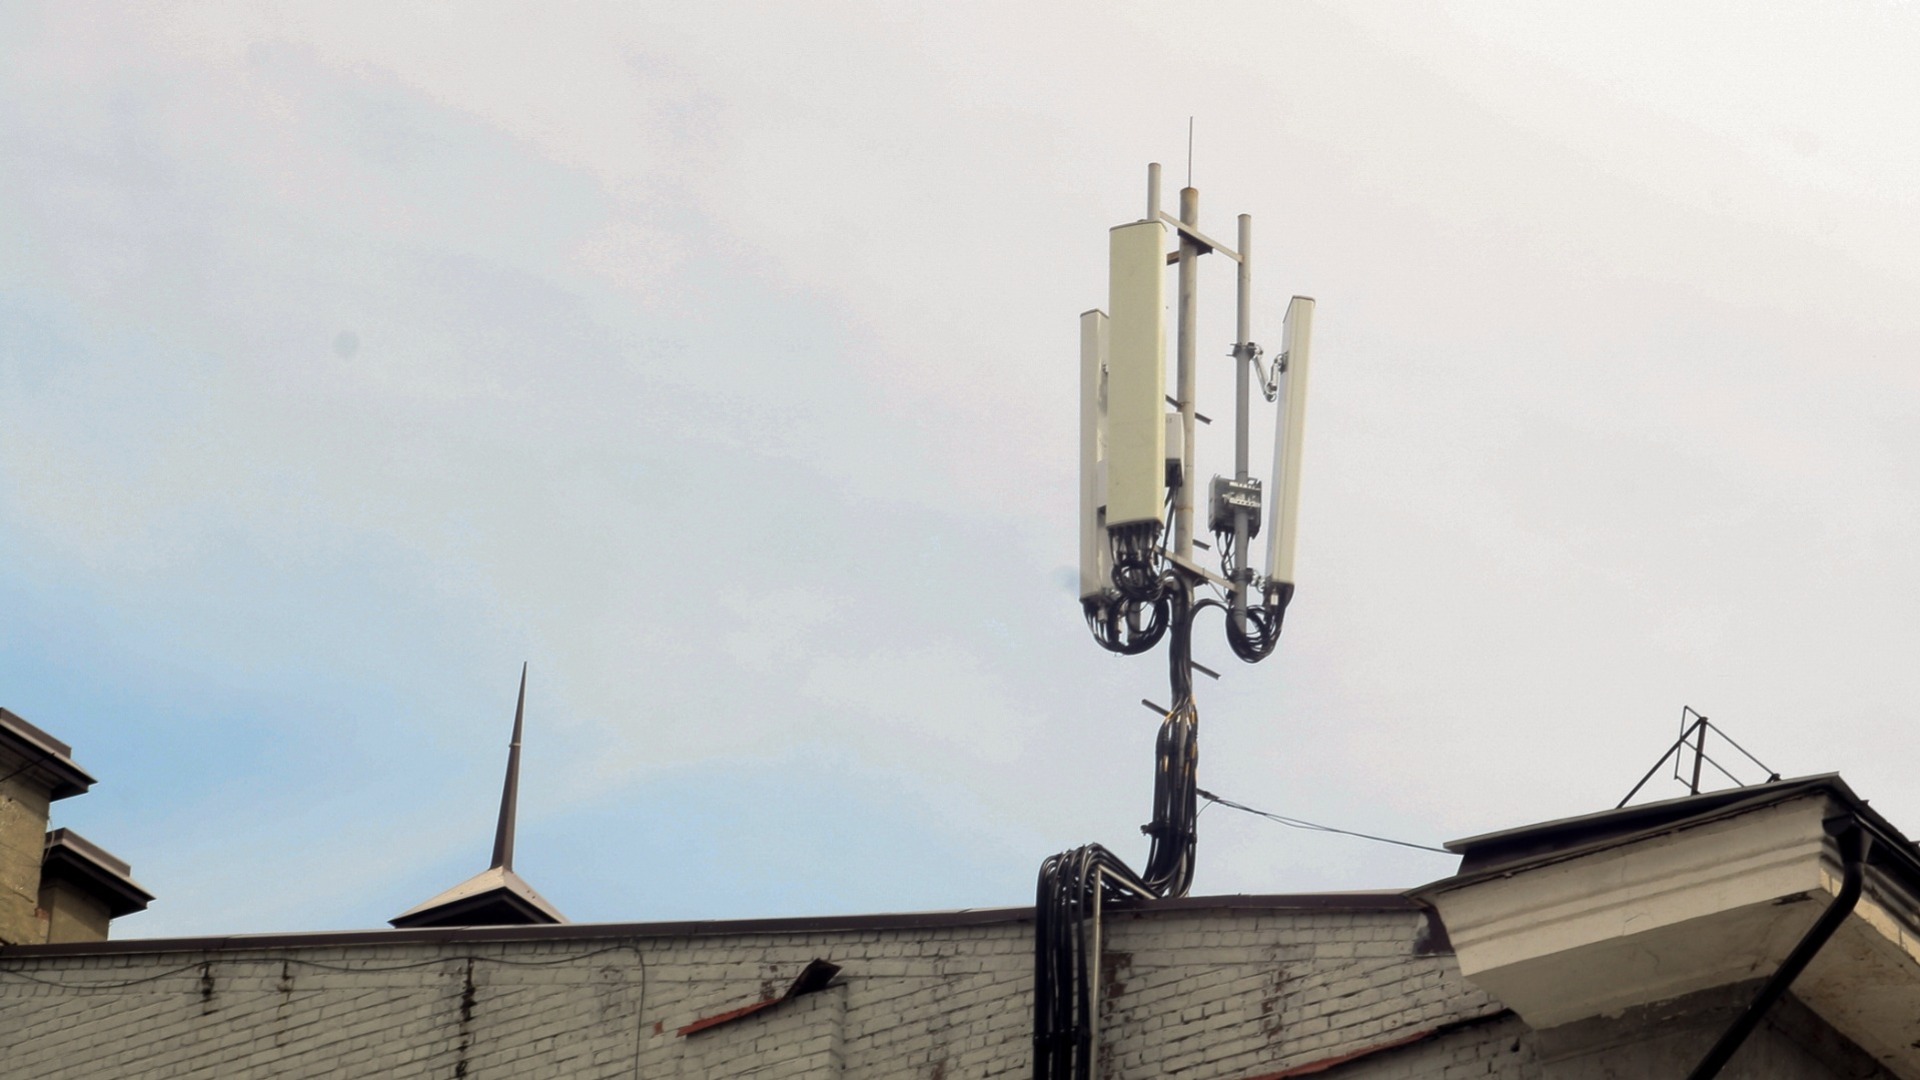 Проблемы со связью в Приморье: вышку сотовой связи снесло ветром — видео